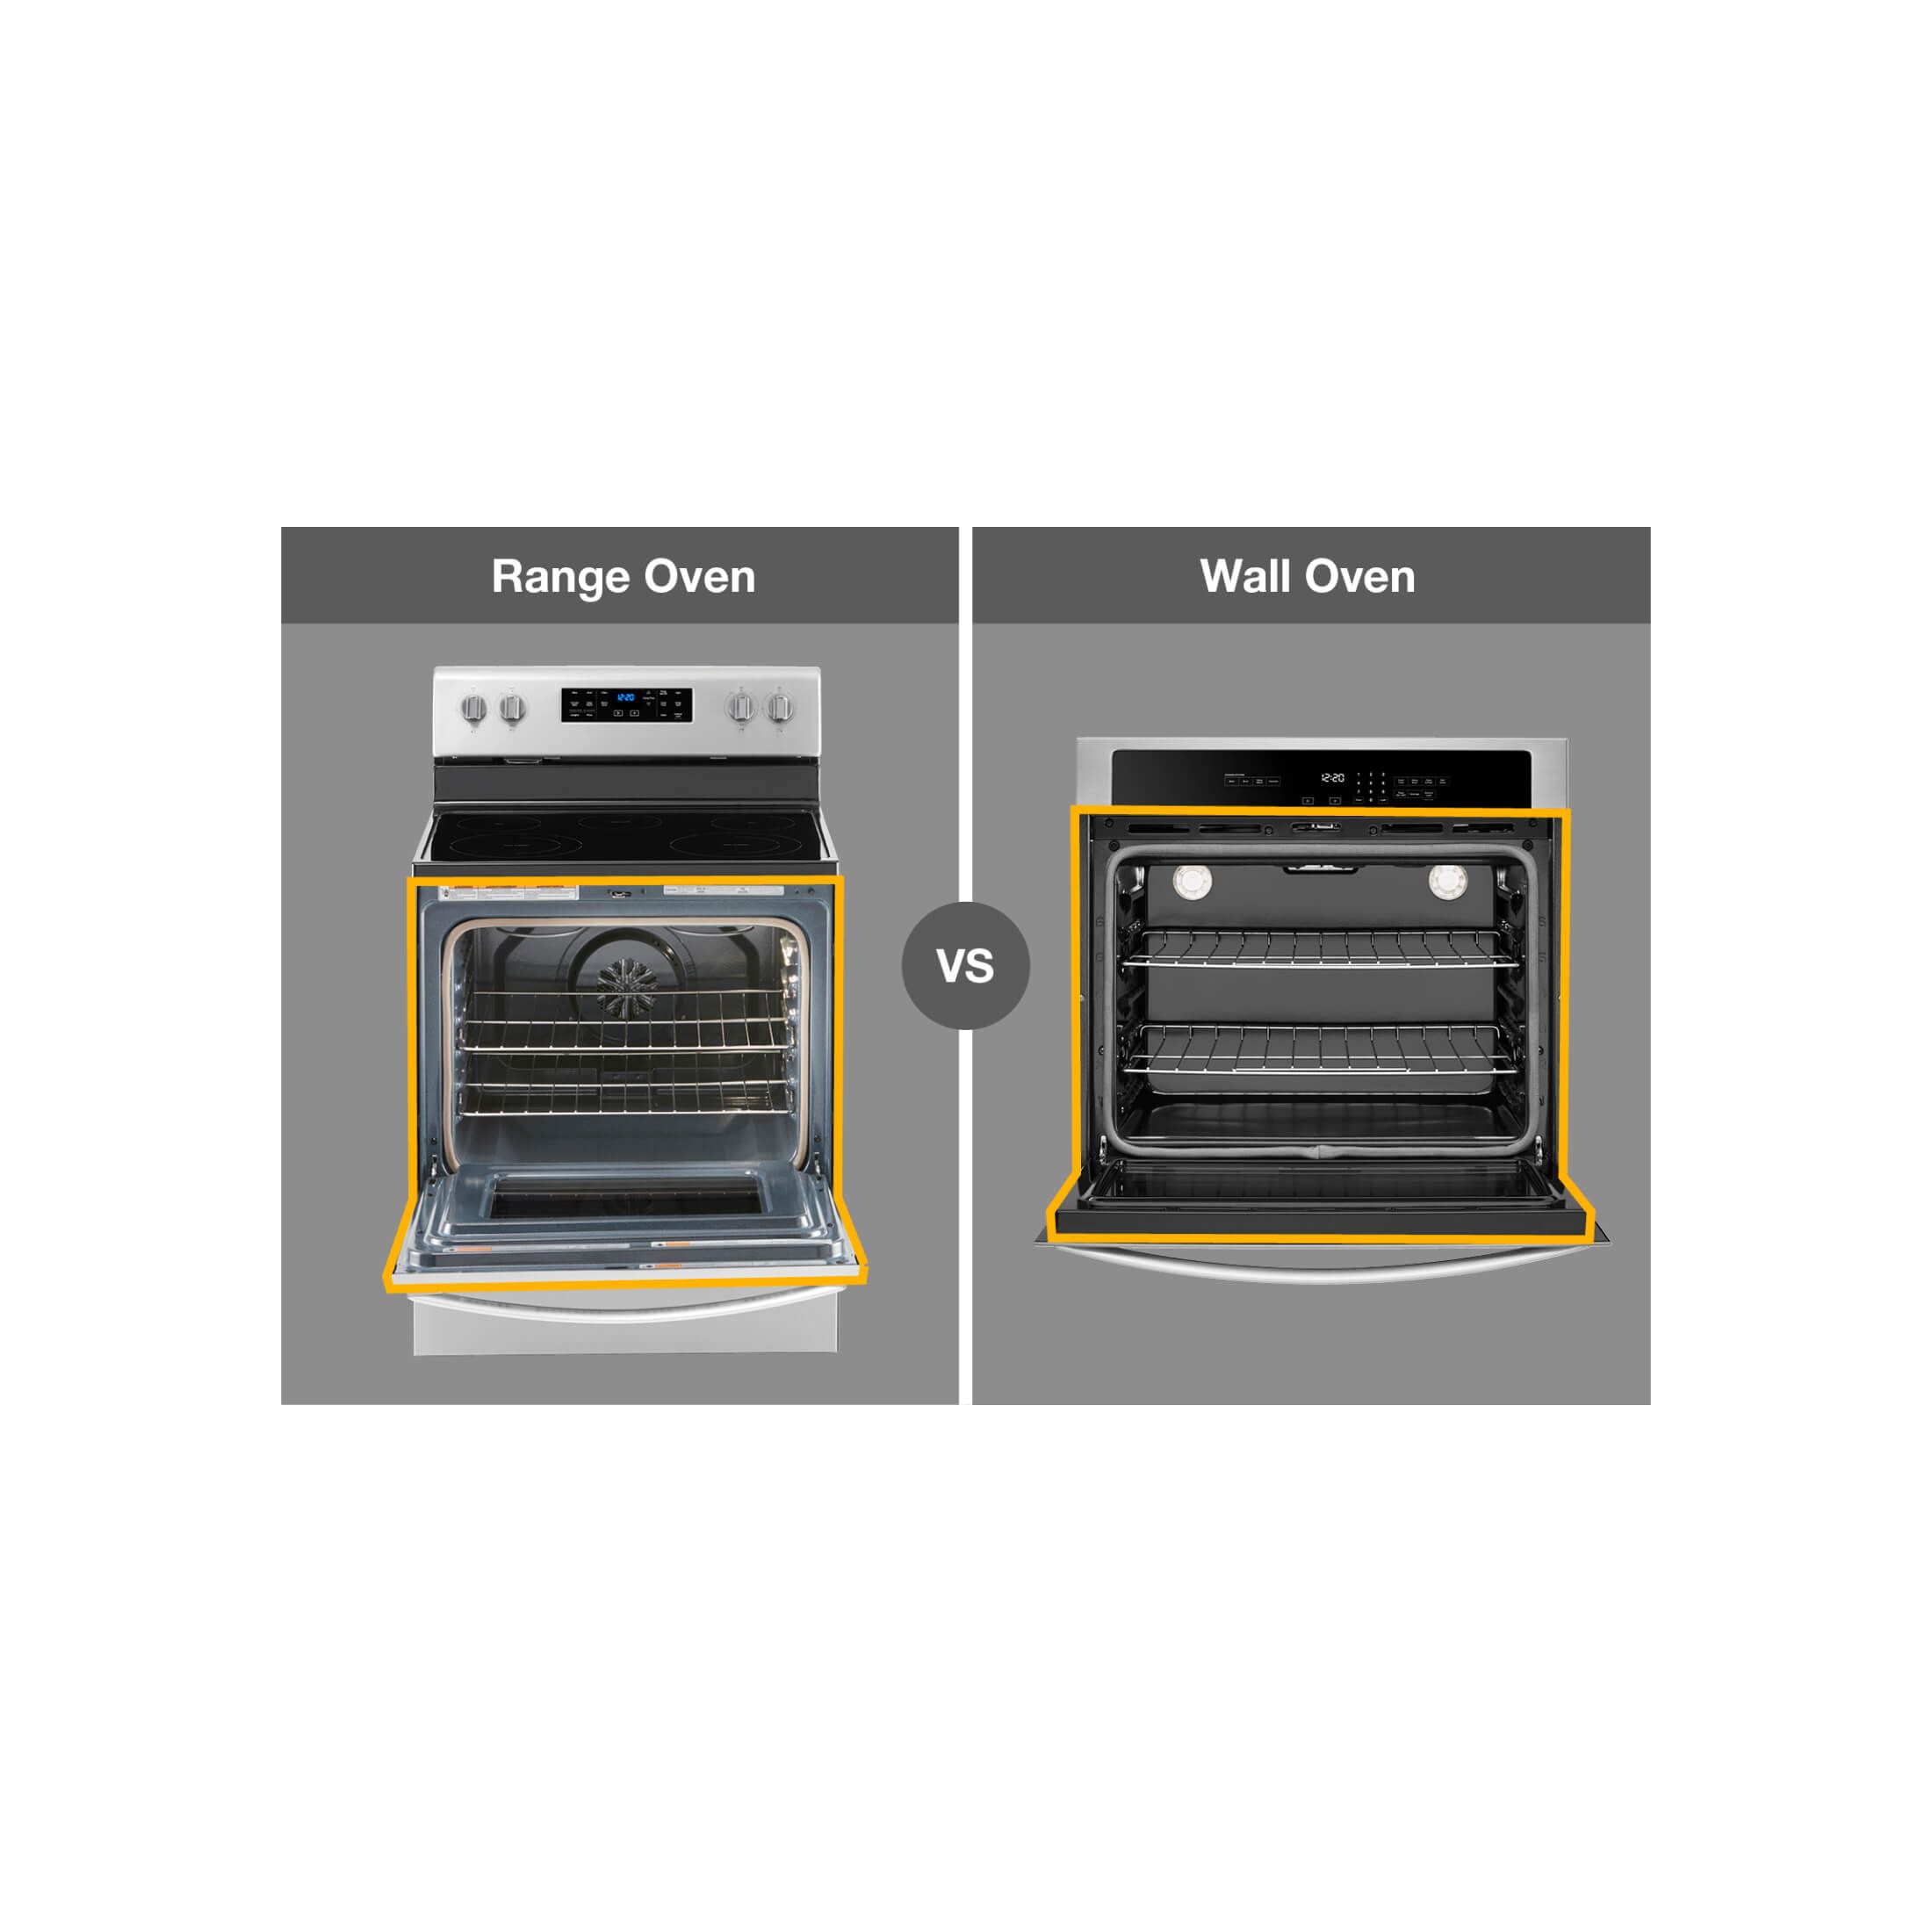 https://kitchenaid-h.assetsadobe.com/is/image/content/dam/business-unit/whirlpool/en-us/marketing-content/site-assets/page-content/whirlpool-aem-2/images/range-vs-stove-vs-oven/range-v-stove-v-oven-IMG3-hl.jpg?fit=constrain&fmt=jpg&hei=2200&resMode=sharp2&utc=2021-08-09T18:36:08Z&wid=2200